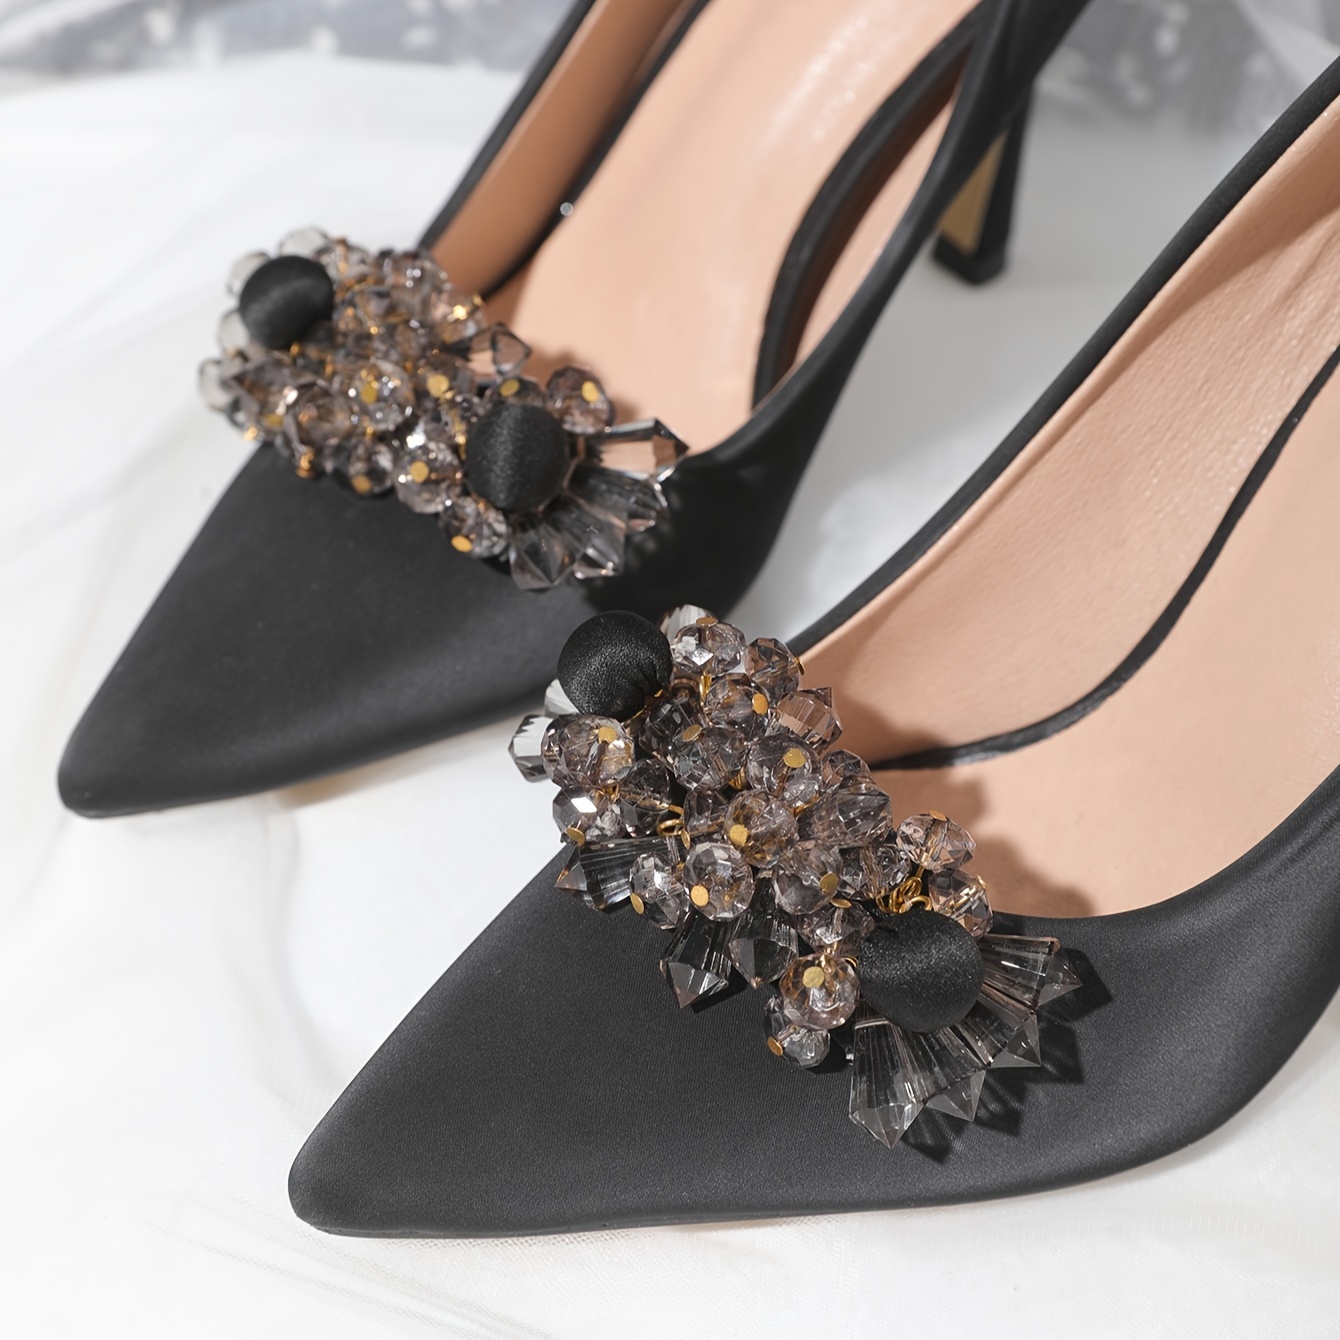 2 Pcs Wedding Pumps Shoe Clips Rhinestone Bow Shoe Accessories Detachable  Shoe Buckle Shoe Embellishment for Women DIY